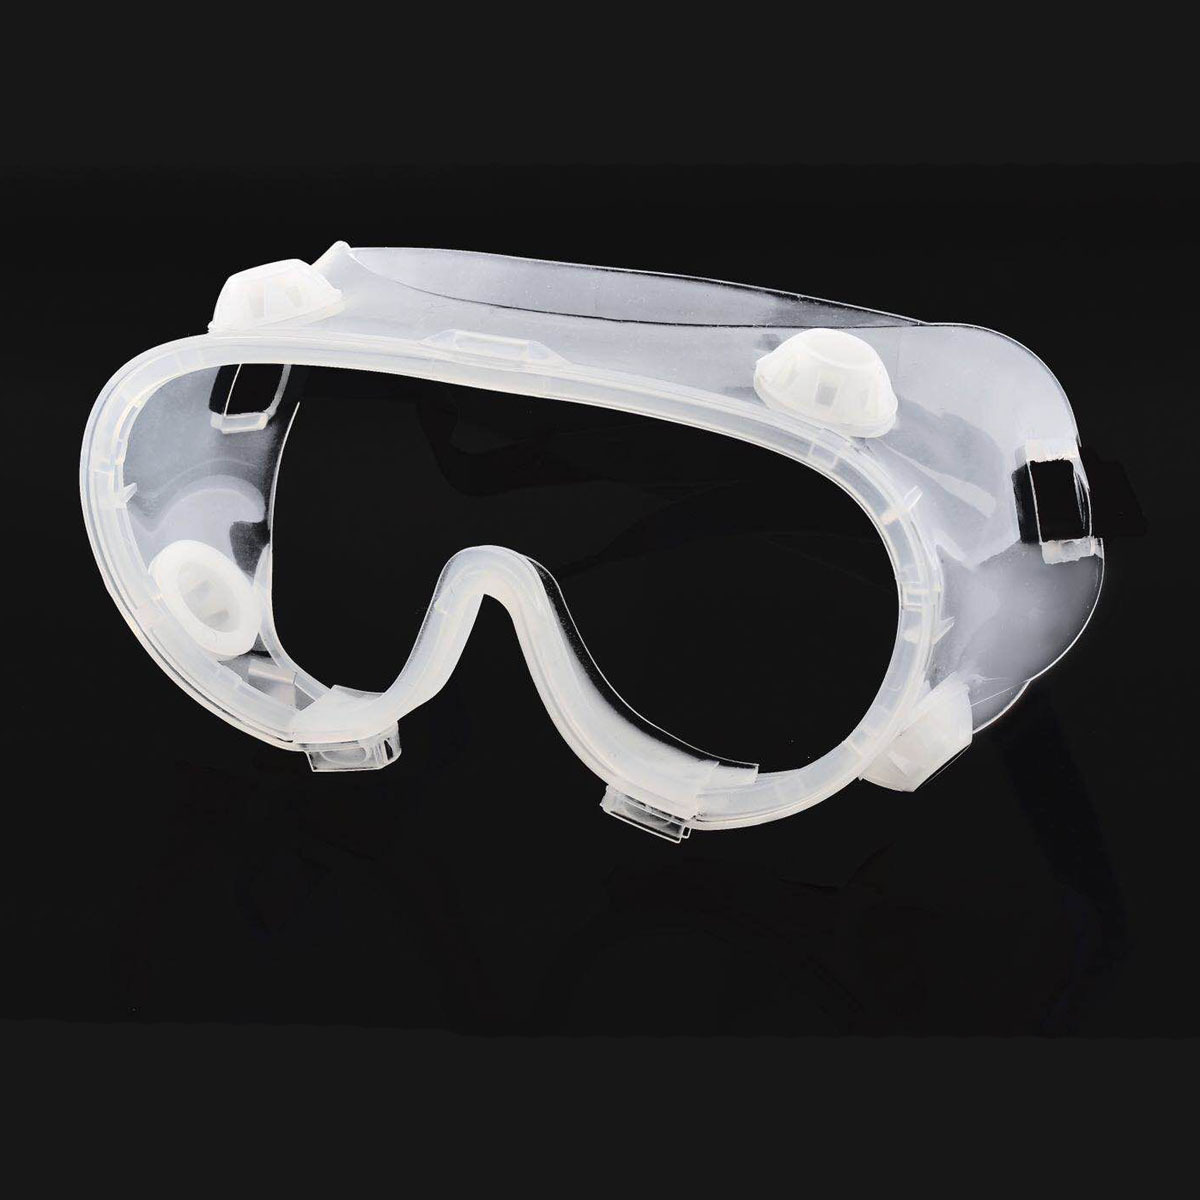 نظارات واقية شفافة نظارات السلامة المضادة للرذاذ نظارات سلامة العمل واقية من الرياح لركوب الدراجات البحوث الصناعية